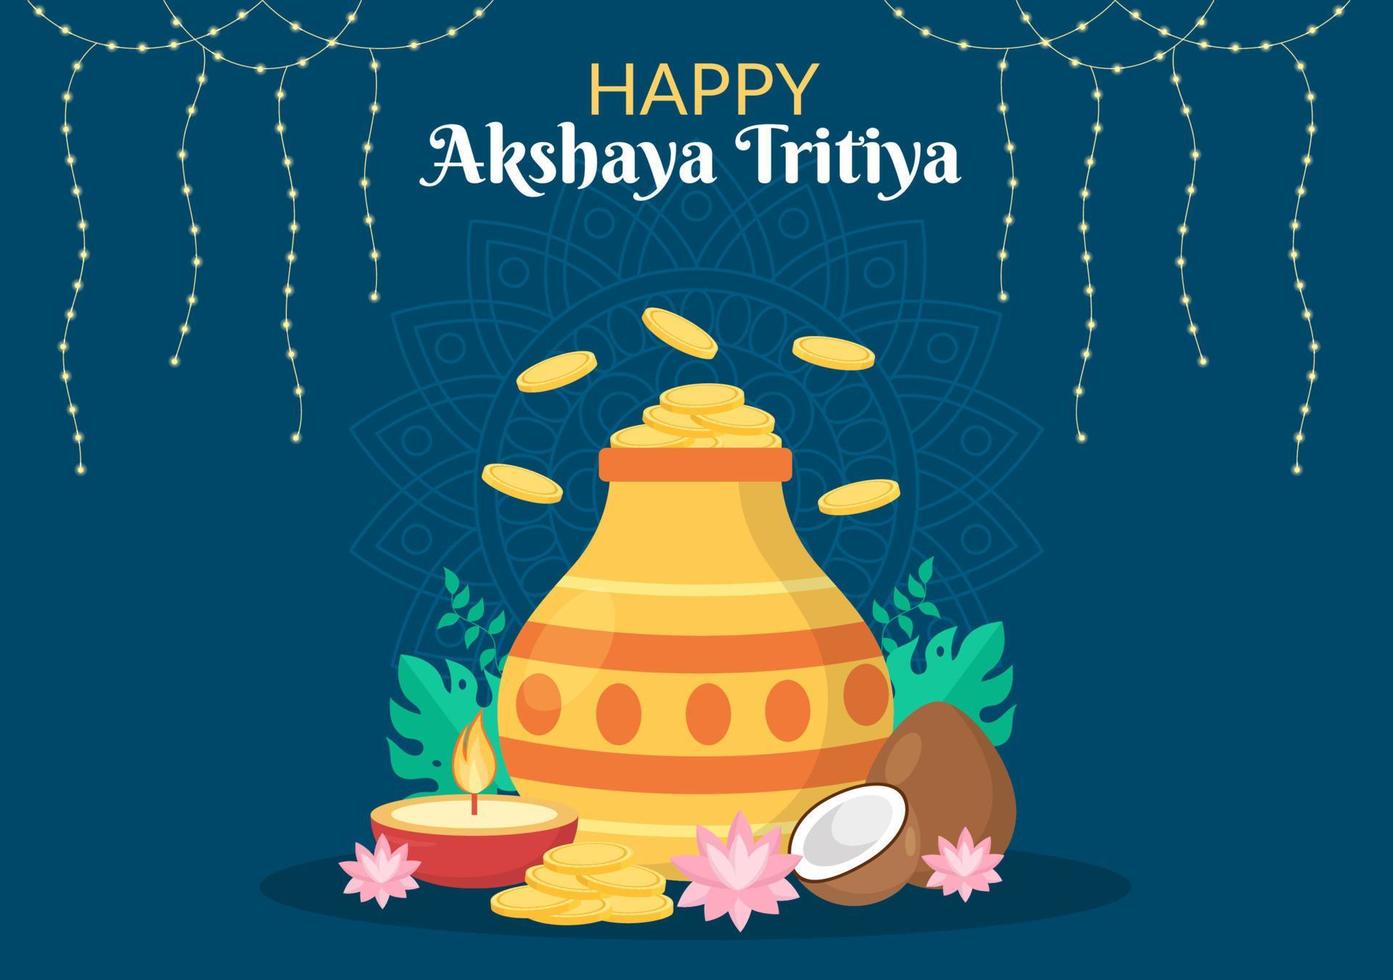 festival di akshaya tritiya con un kalash dorato, una pentola e monete d'oro per la celebrazione di dhanteras sull'indiano nell'illustrazione del modello di sfondo decorato vettore